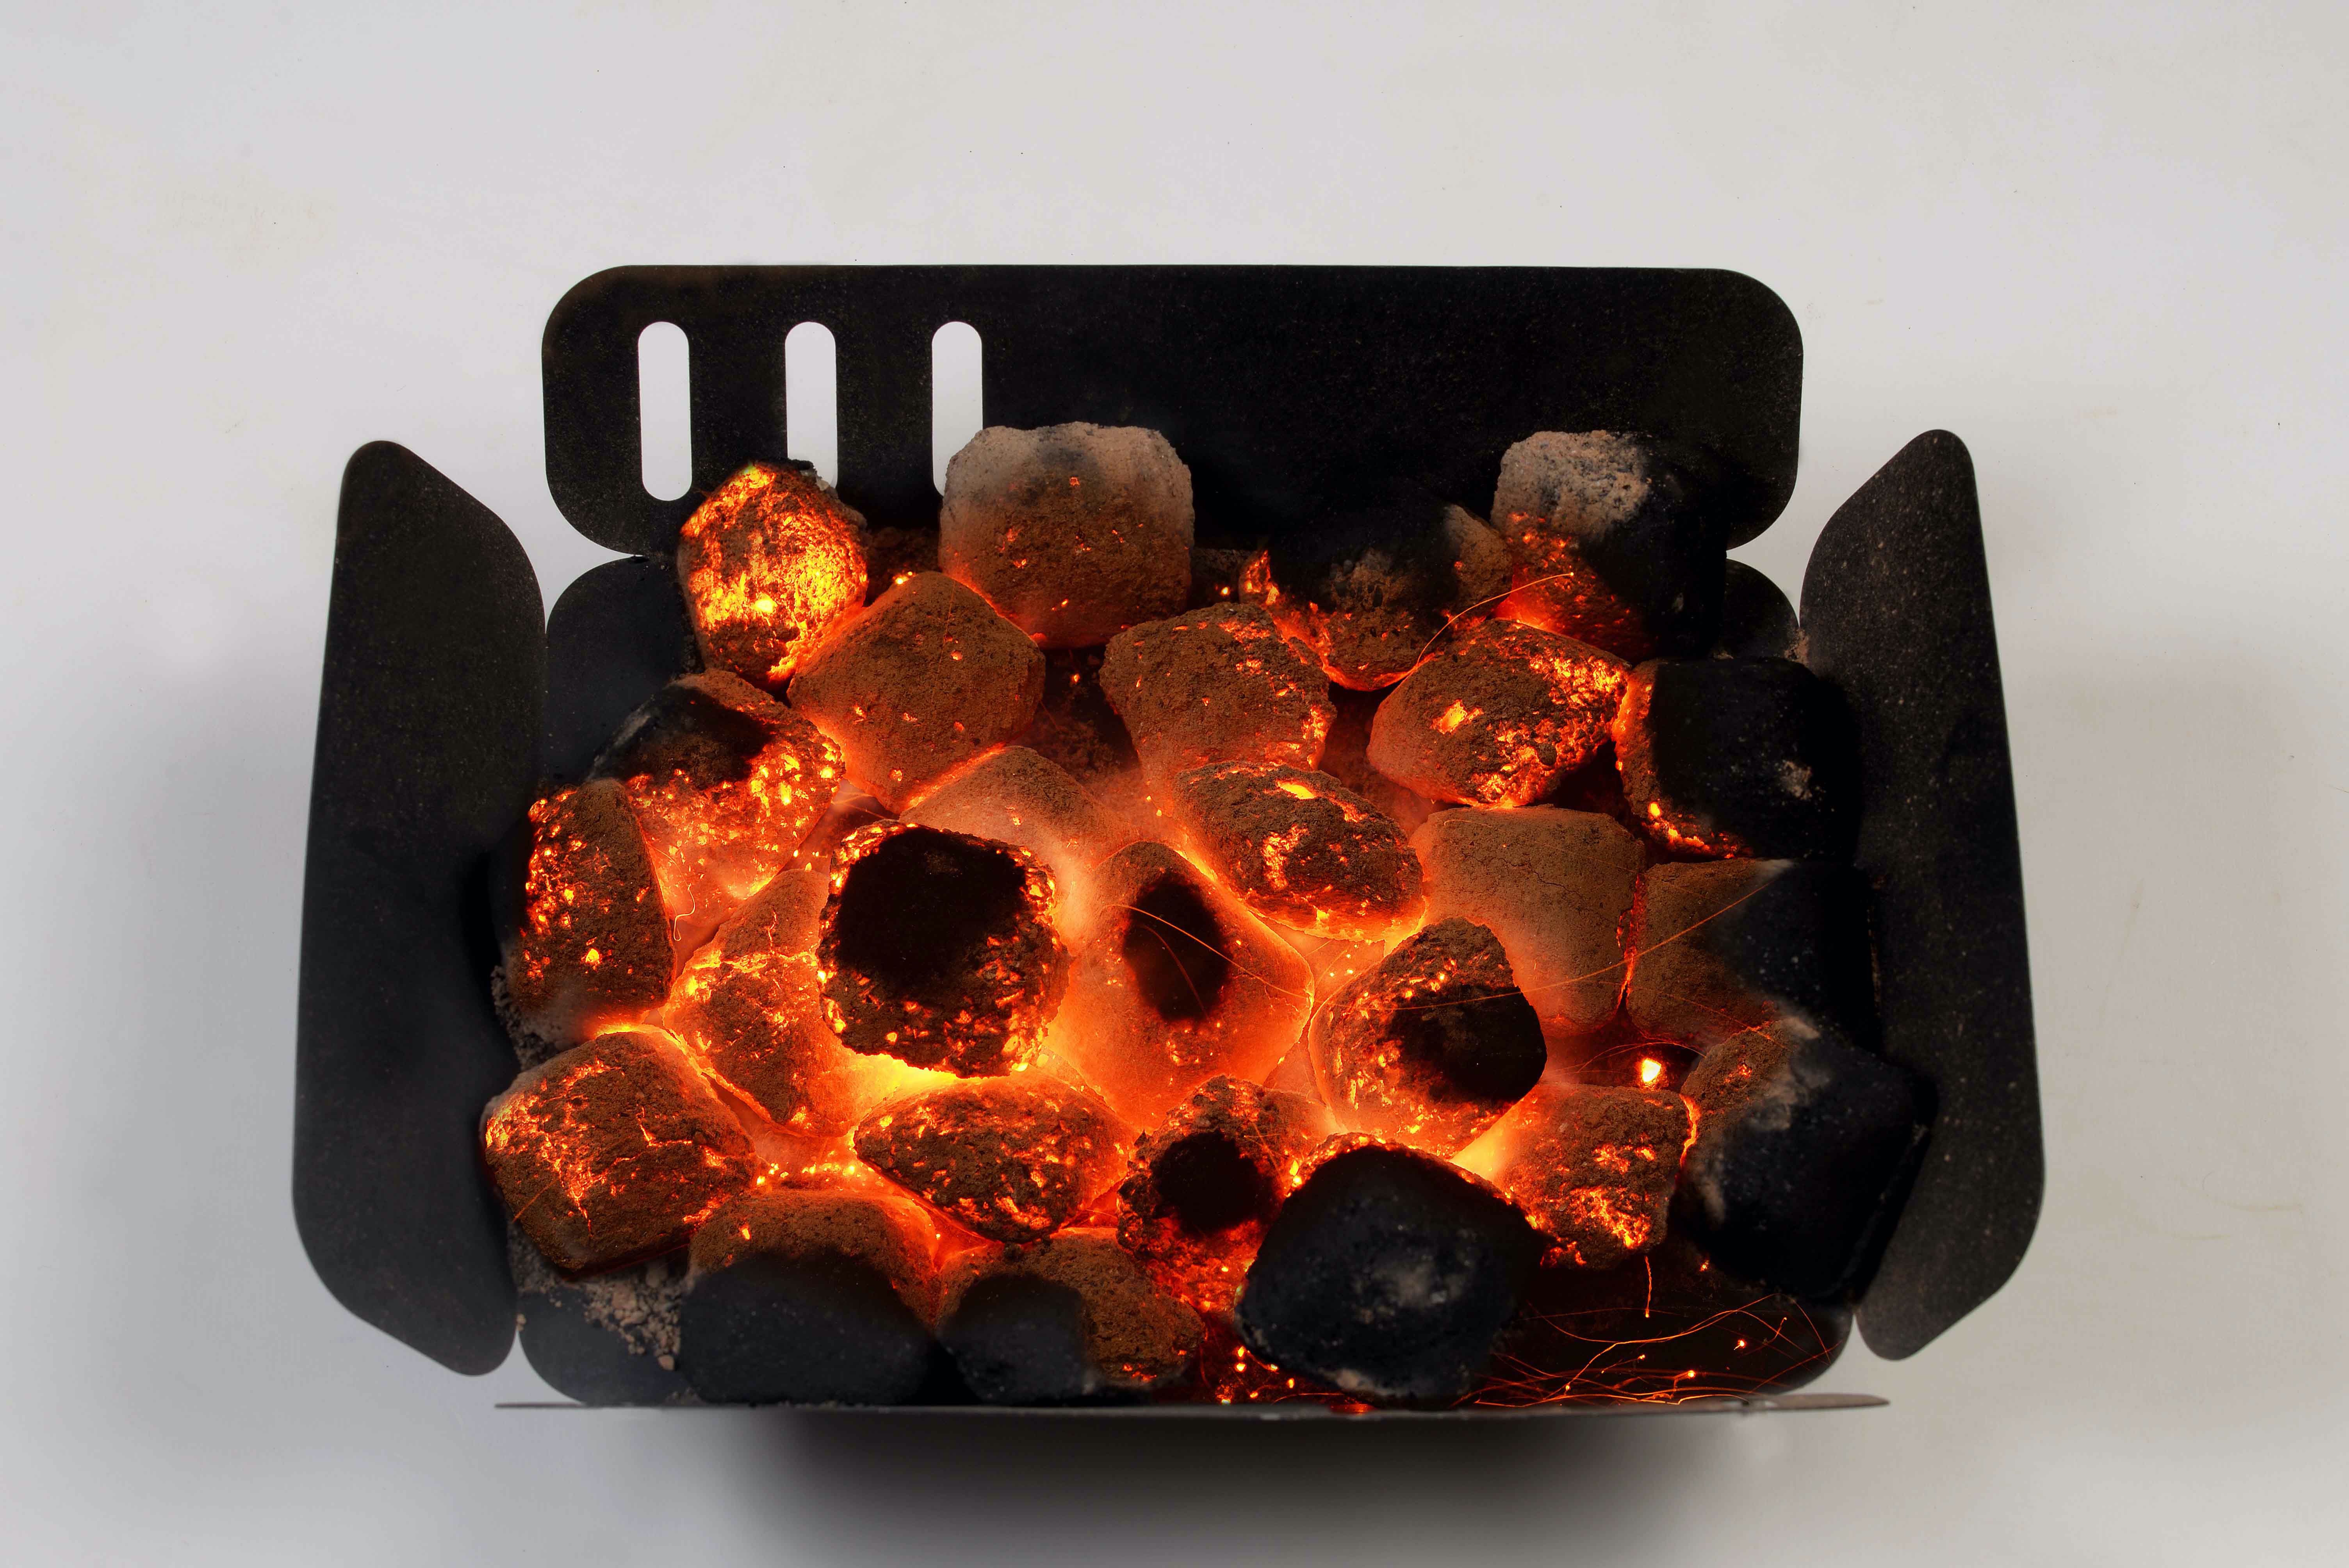 Charcoal briquettes uses